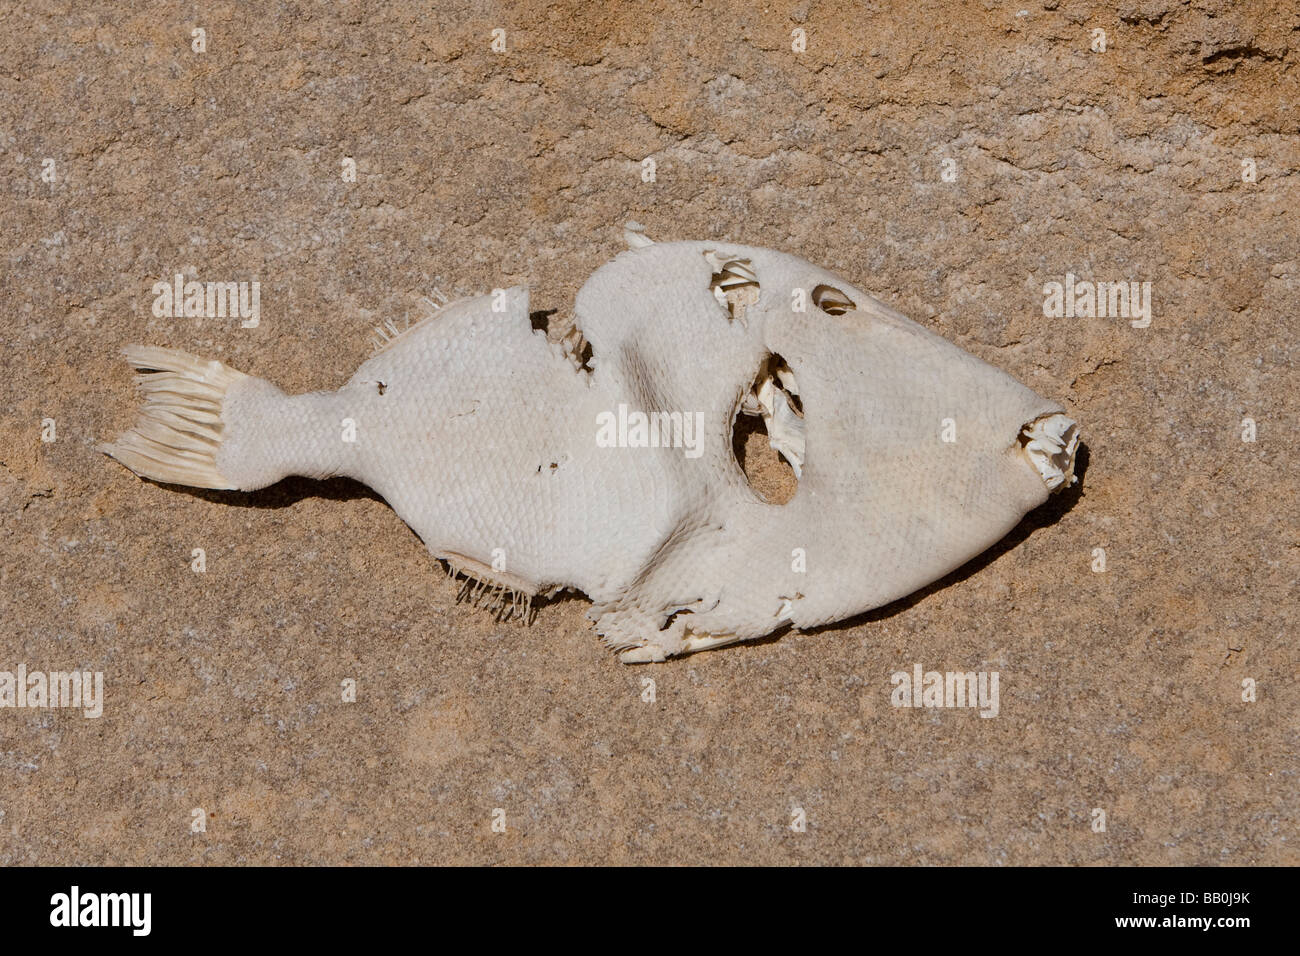 Fischhaut poisson séché au soleil peau de poisson perroquet spp. Punto Colorado Baja California au Mexique Banque D'Images